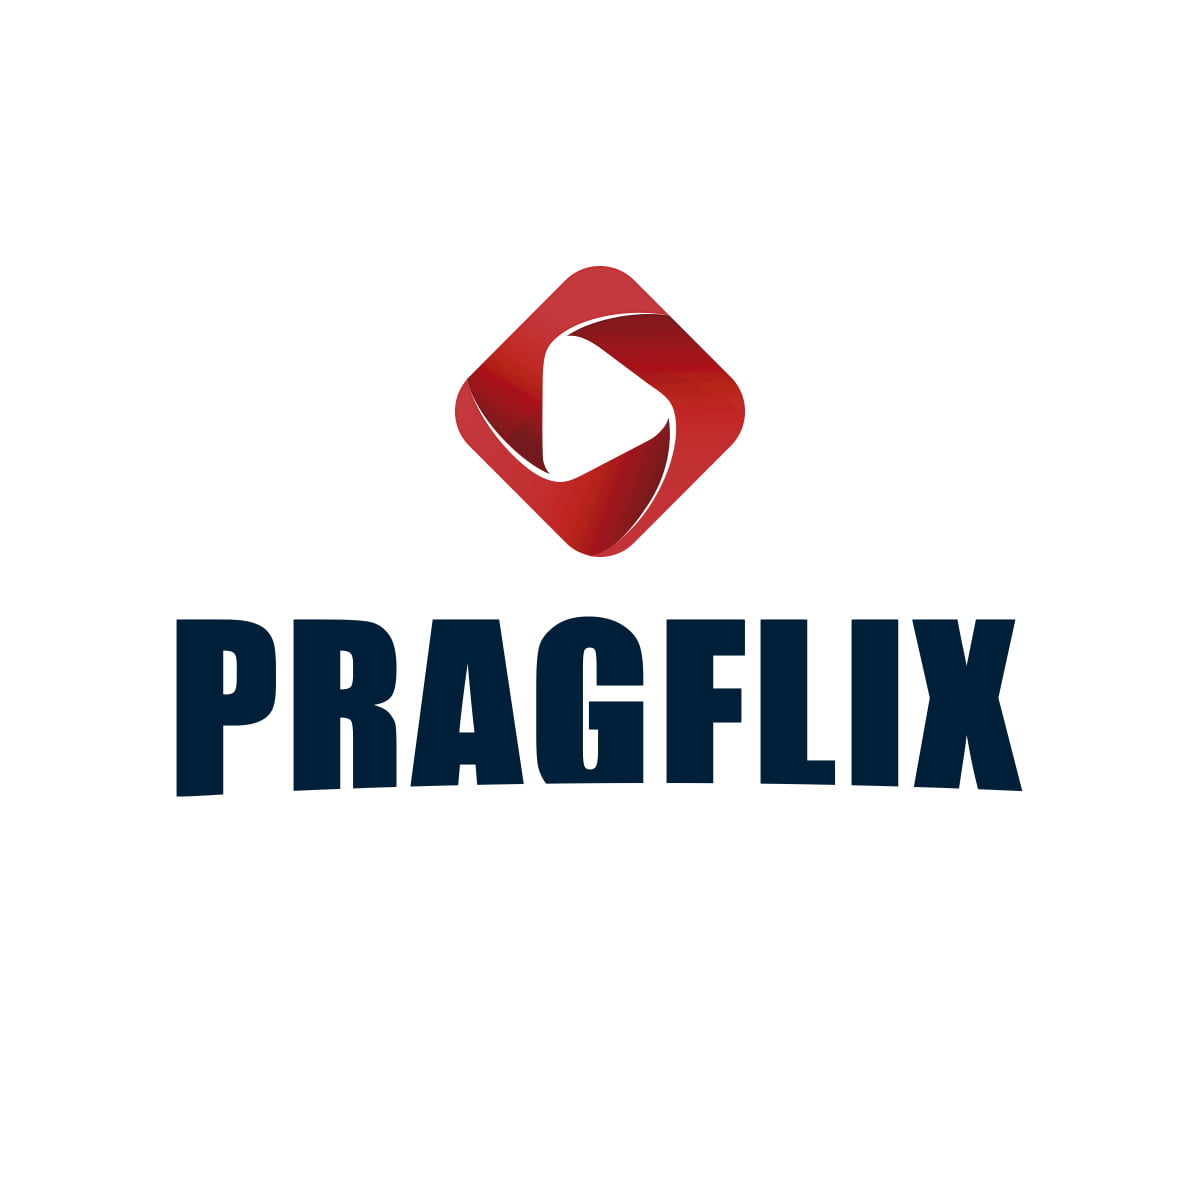 Pragflix, sua assinatura de Cursos para Profissionais de Controle de Pragas e Vetores